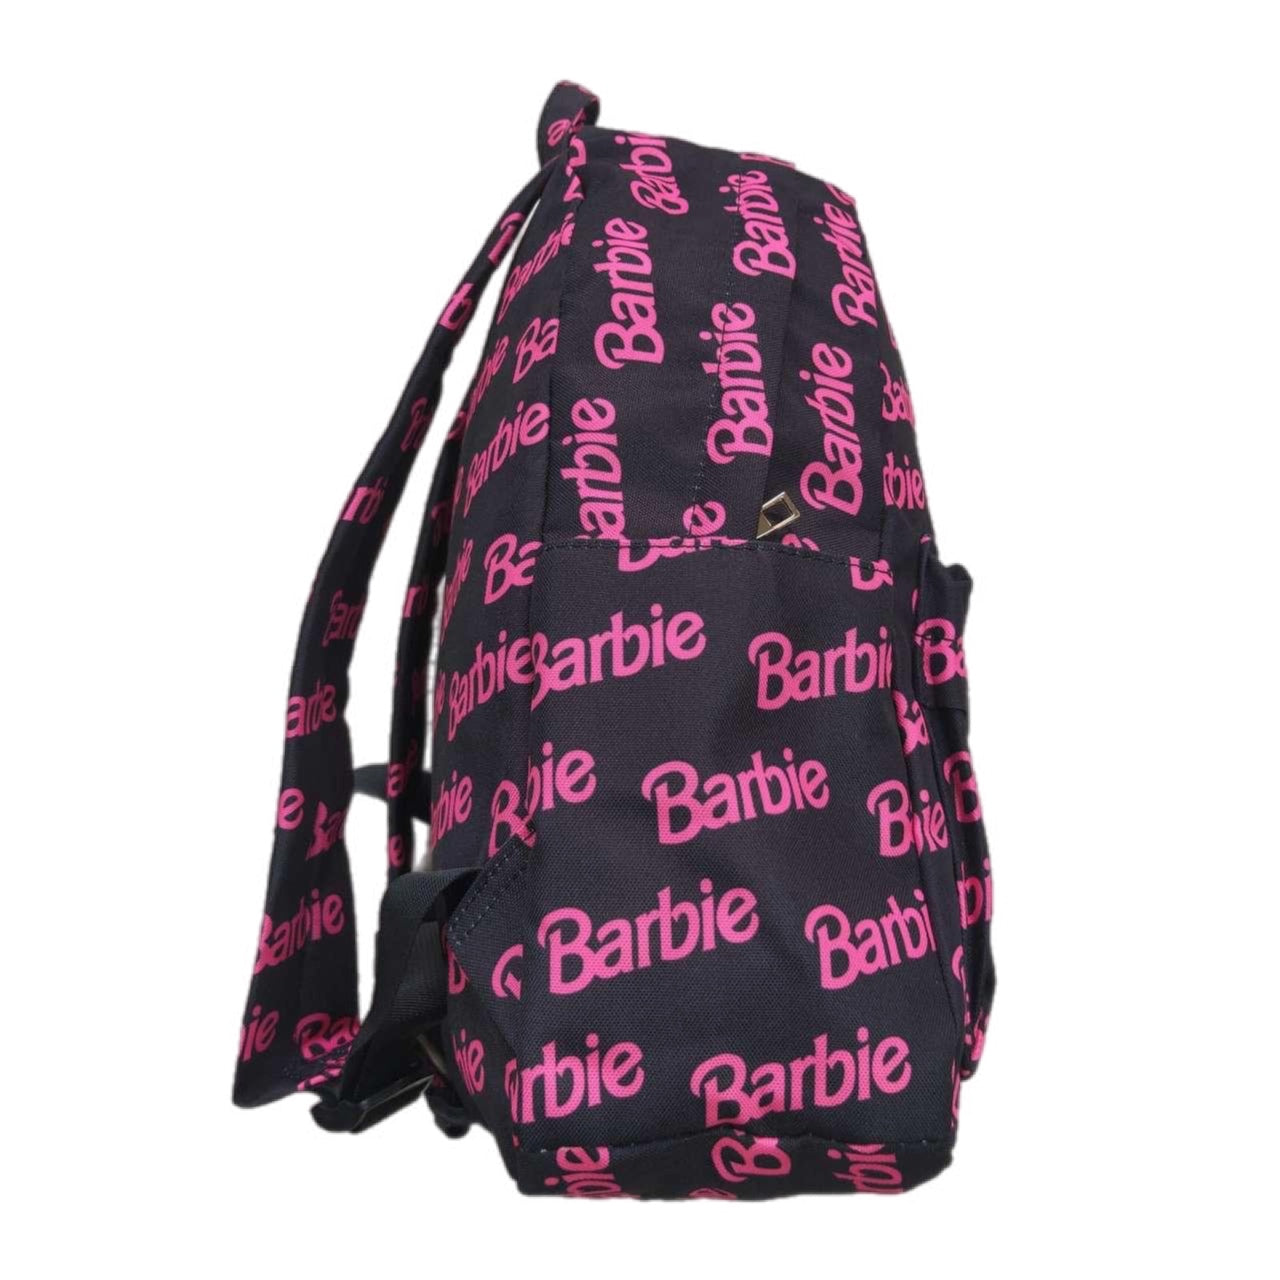 ᴡᴇᴇᴋʟʏ ᴘʀᴇ ᴏʀᴅᴇʀ Backpack- Party Girl 10x14x4